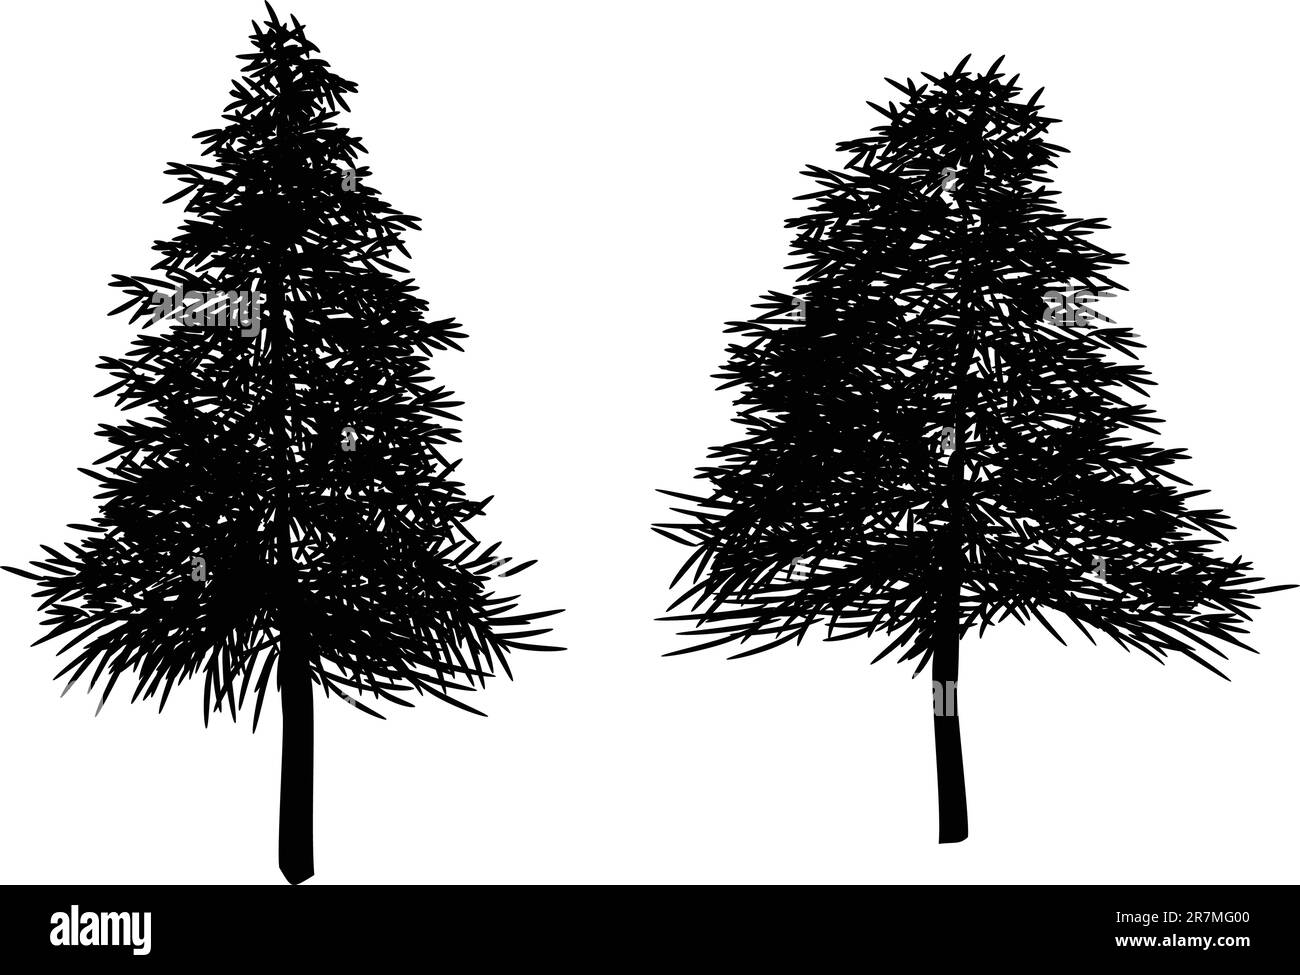 Illustrationen von weihnachtsbäumen, Tannenbaum, Vektorformat. Leaves können neu angeordnet werden. Stock Vektor